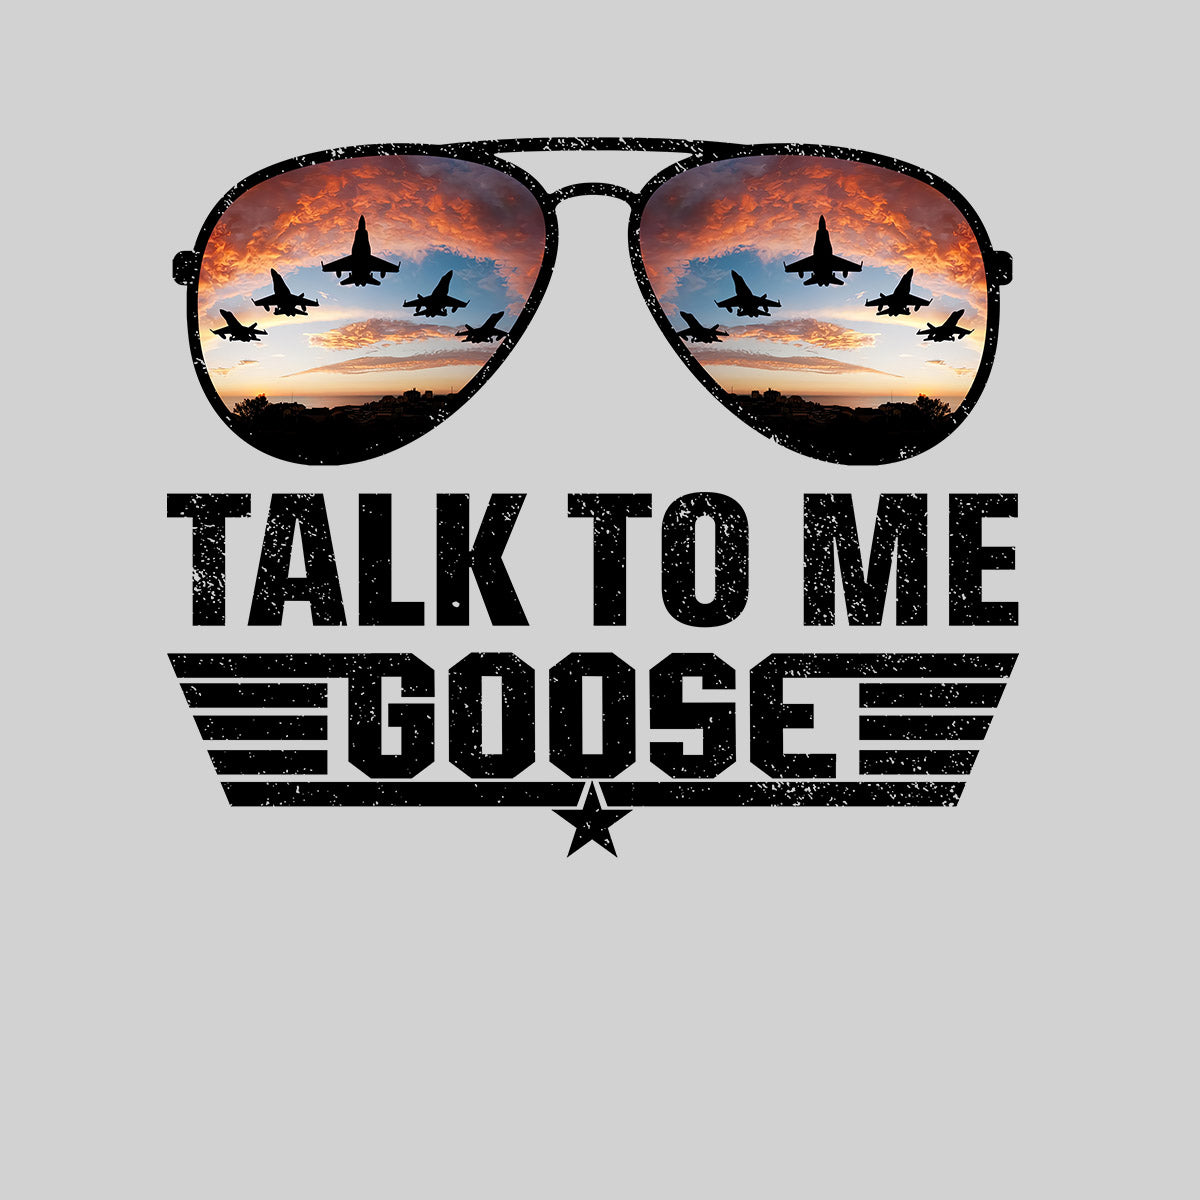 Talk To Me Goose T-shirt Top Gun